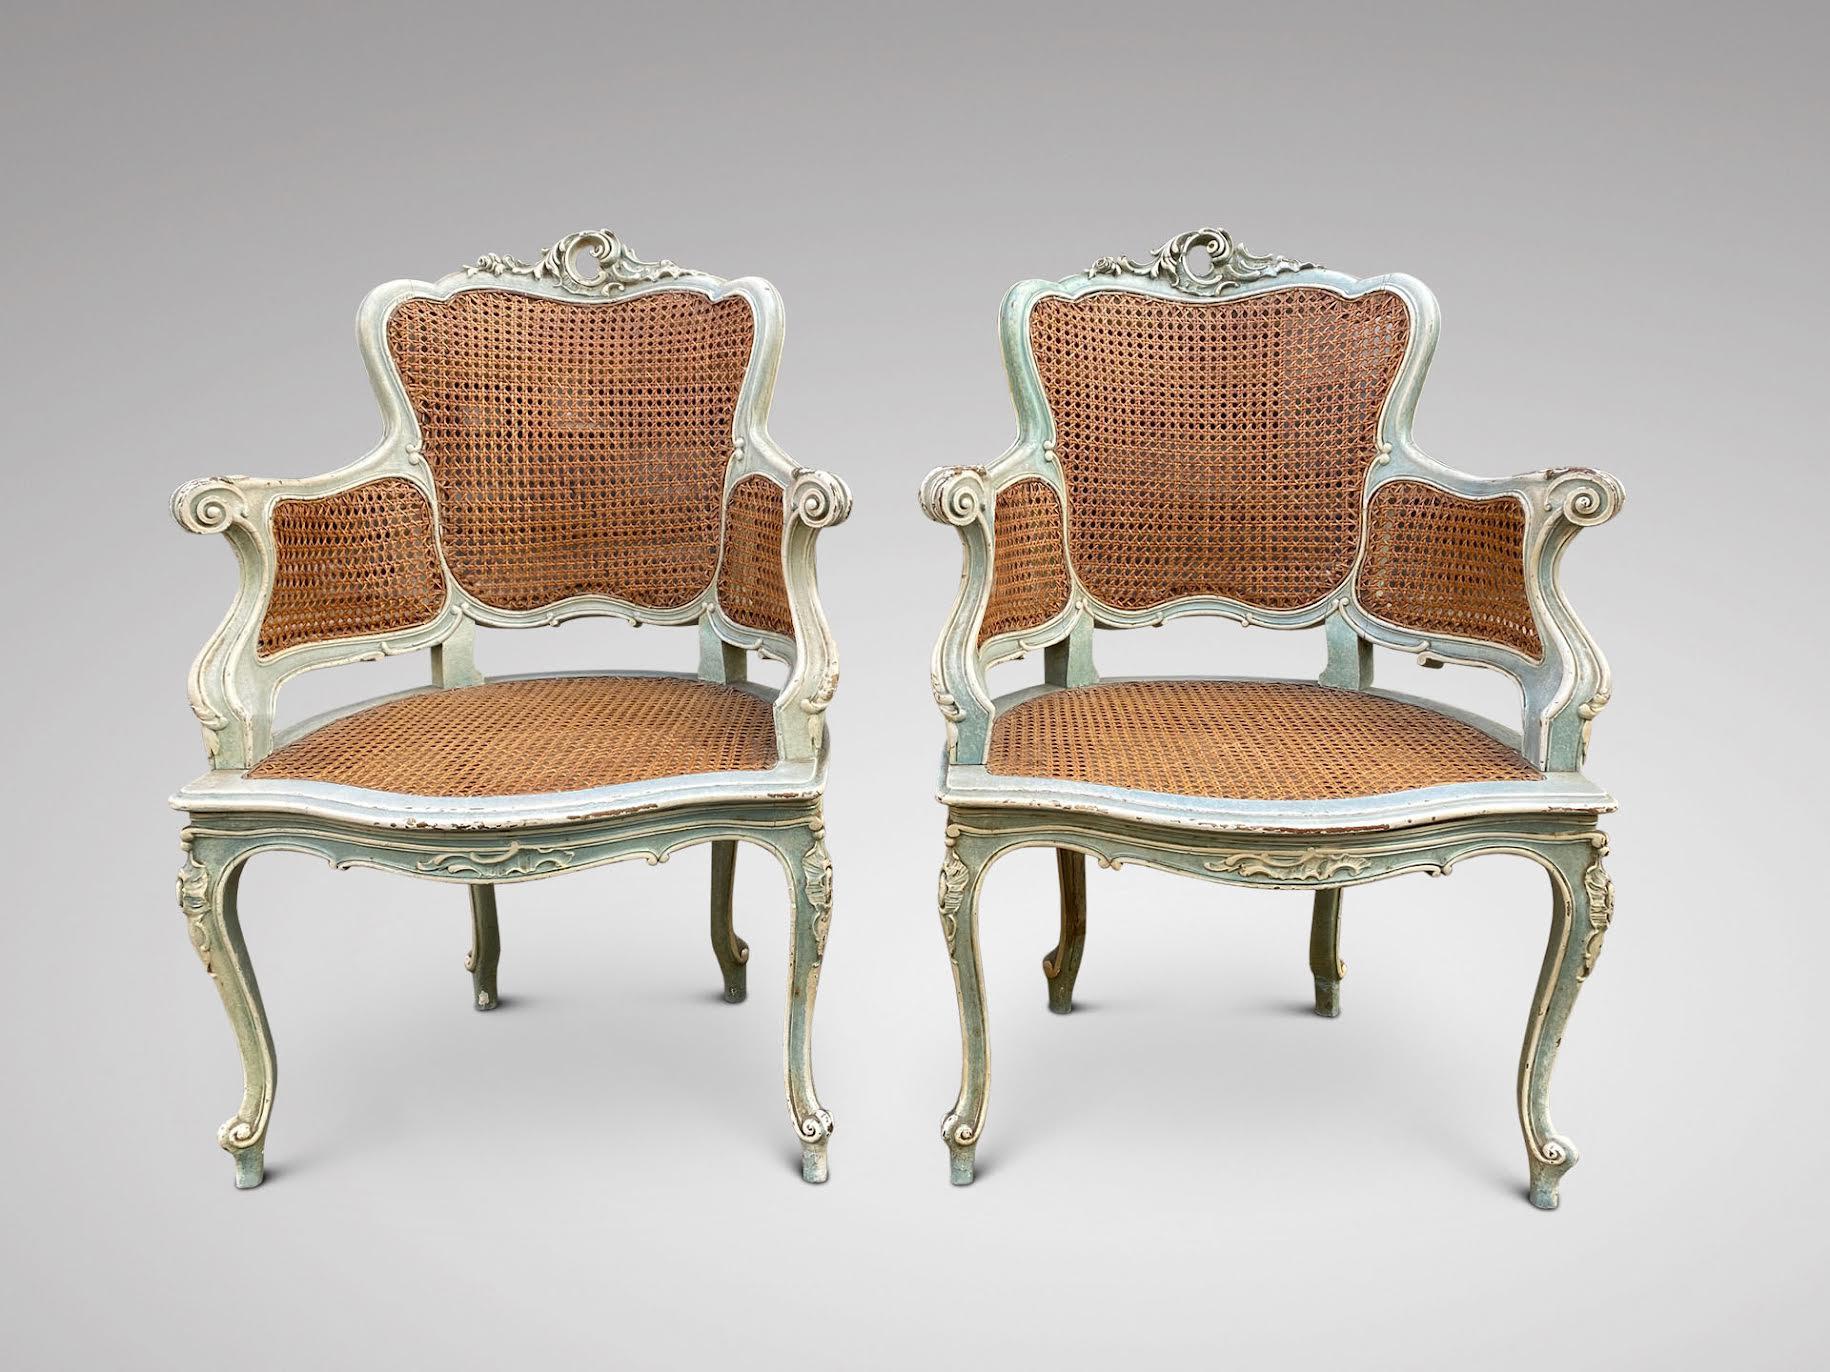 Une paire de fauteuils de qualité en canne sculptée, peints en bleu clair et blanc, datant du 19ème siècle. Finement sculptée à la main et extrêmement confortable, cette paire de fauteuils présente de magnifiques lignes sinueuses typiques de la